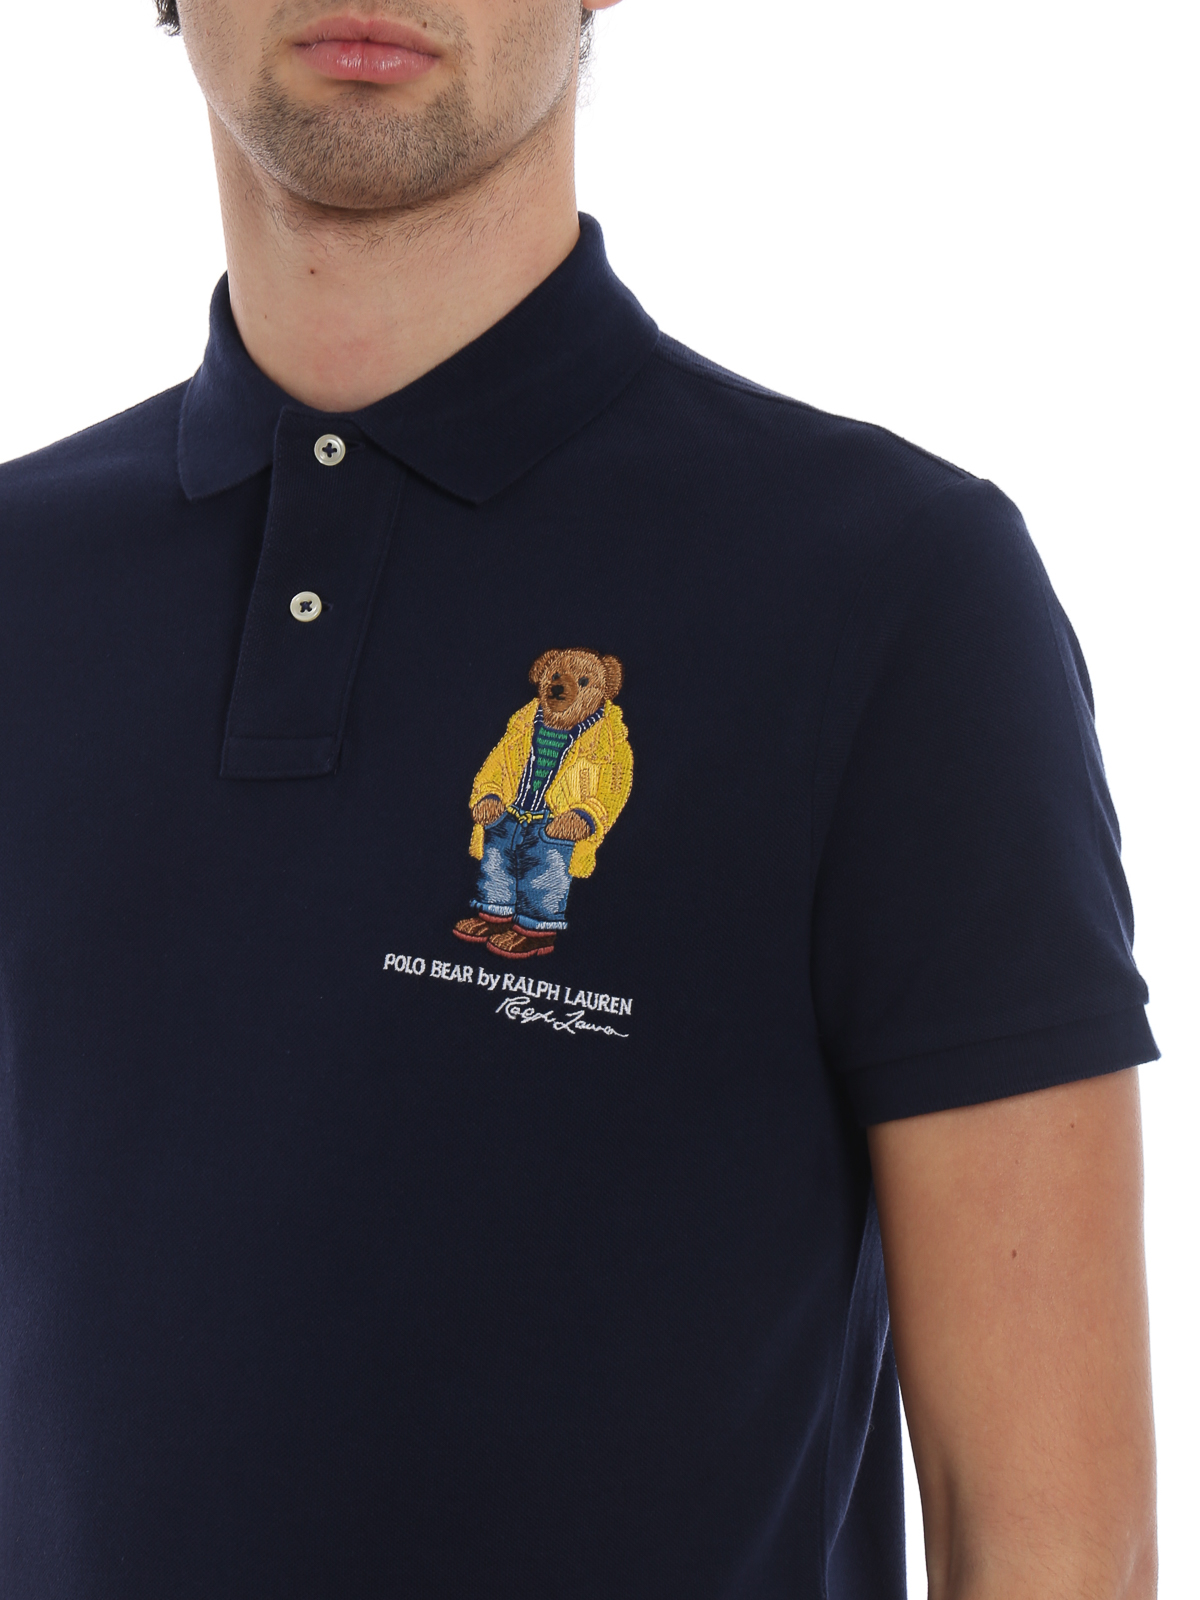 polo shirt with polo bear